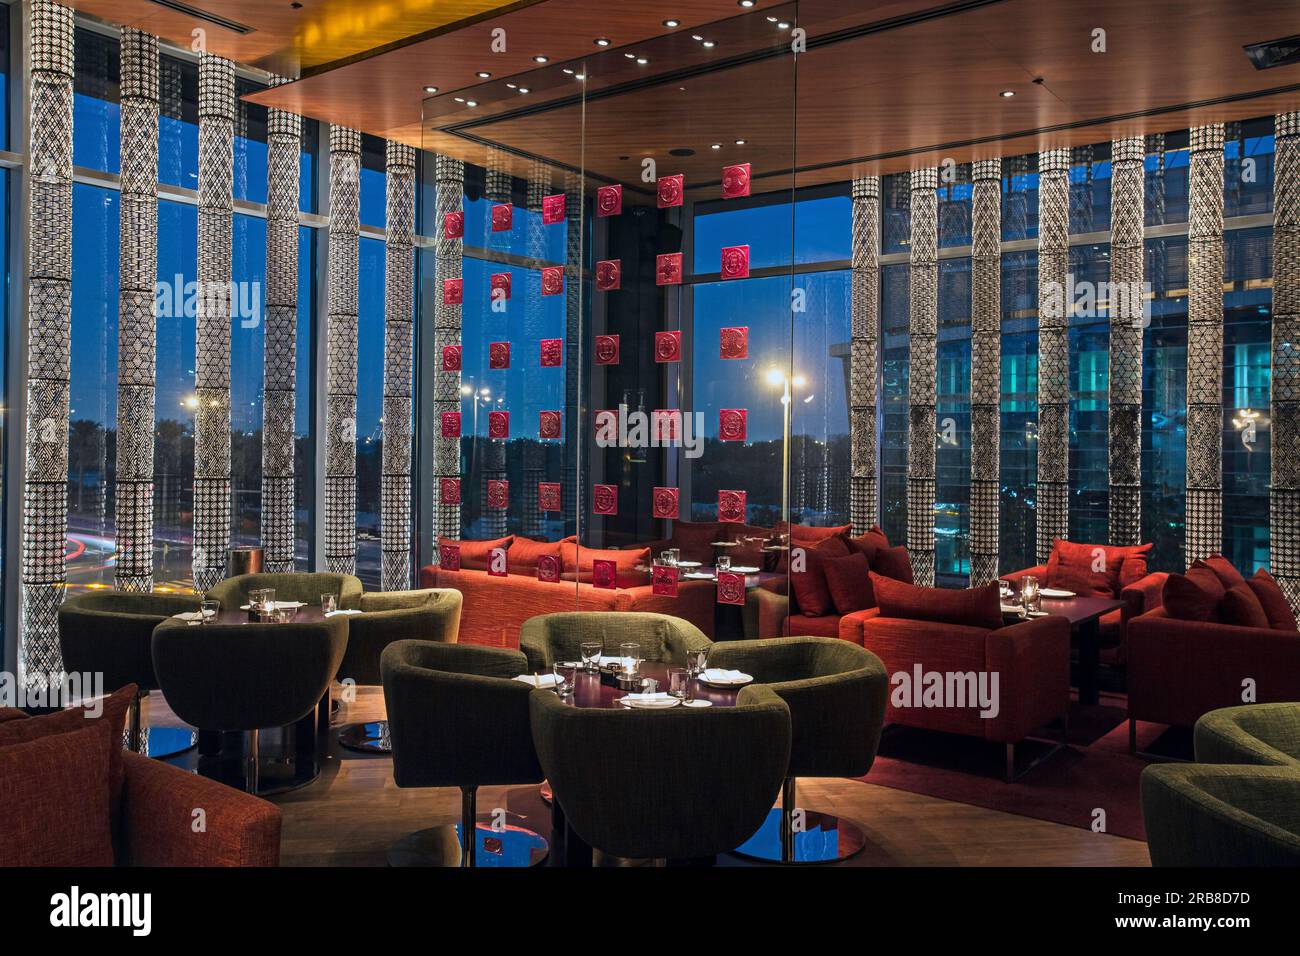 Innere des japanischen Restaurant Zuma im DIFC in Dubai Vereinigte Arabische Emirate Stockfoto